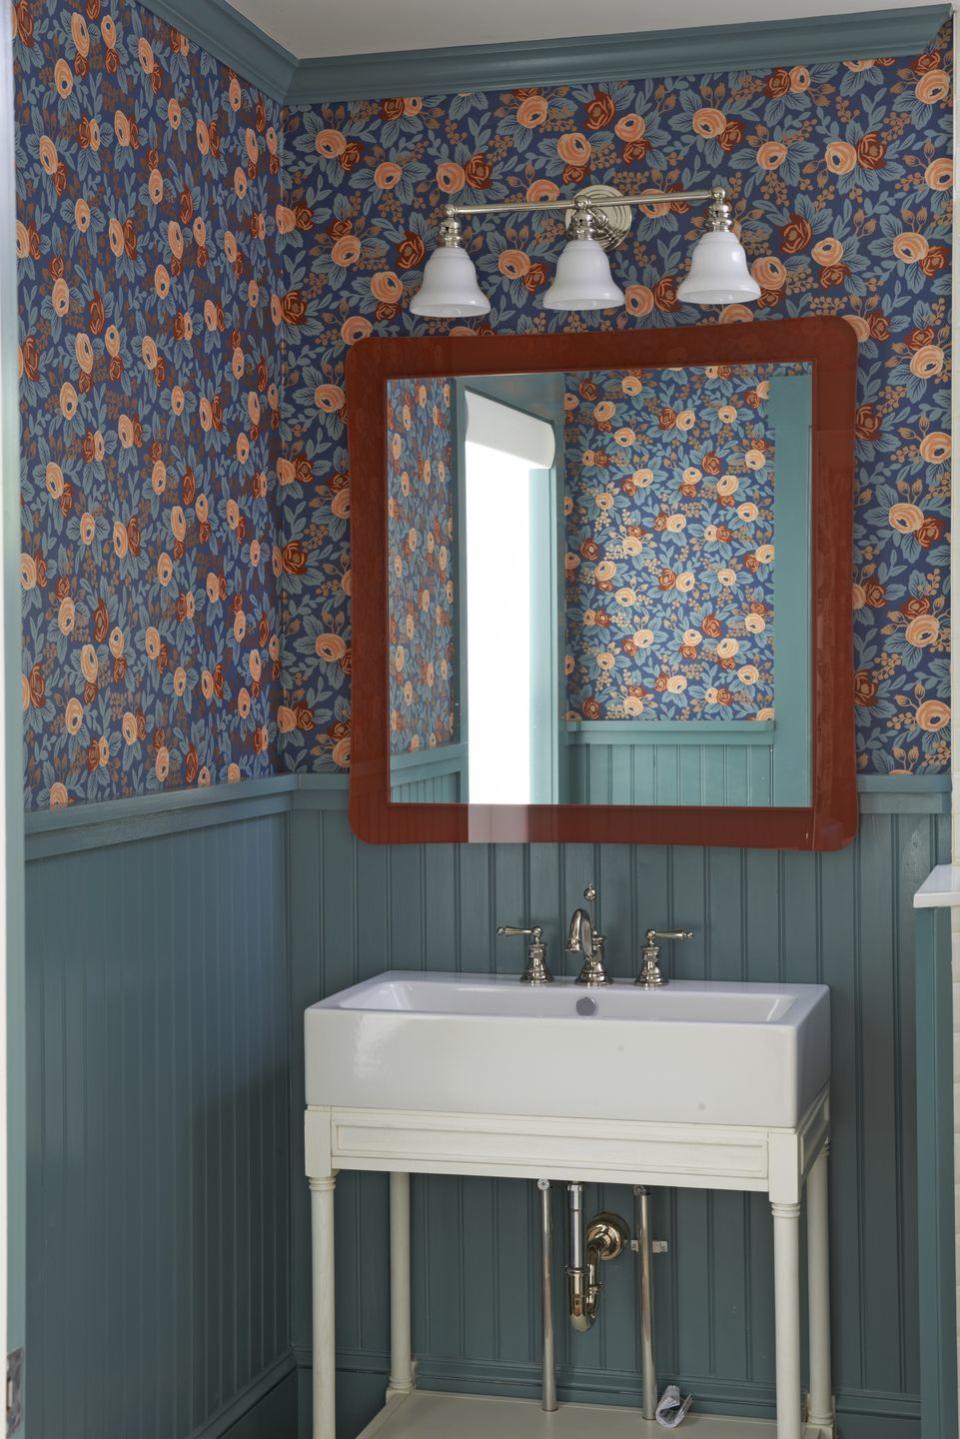 Moody Floral Wallpaper for a Cozy Bathroom